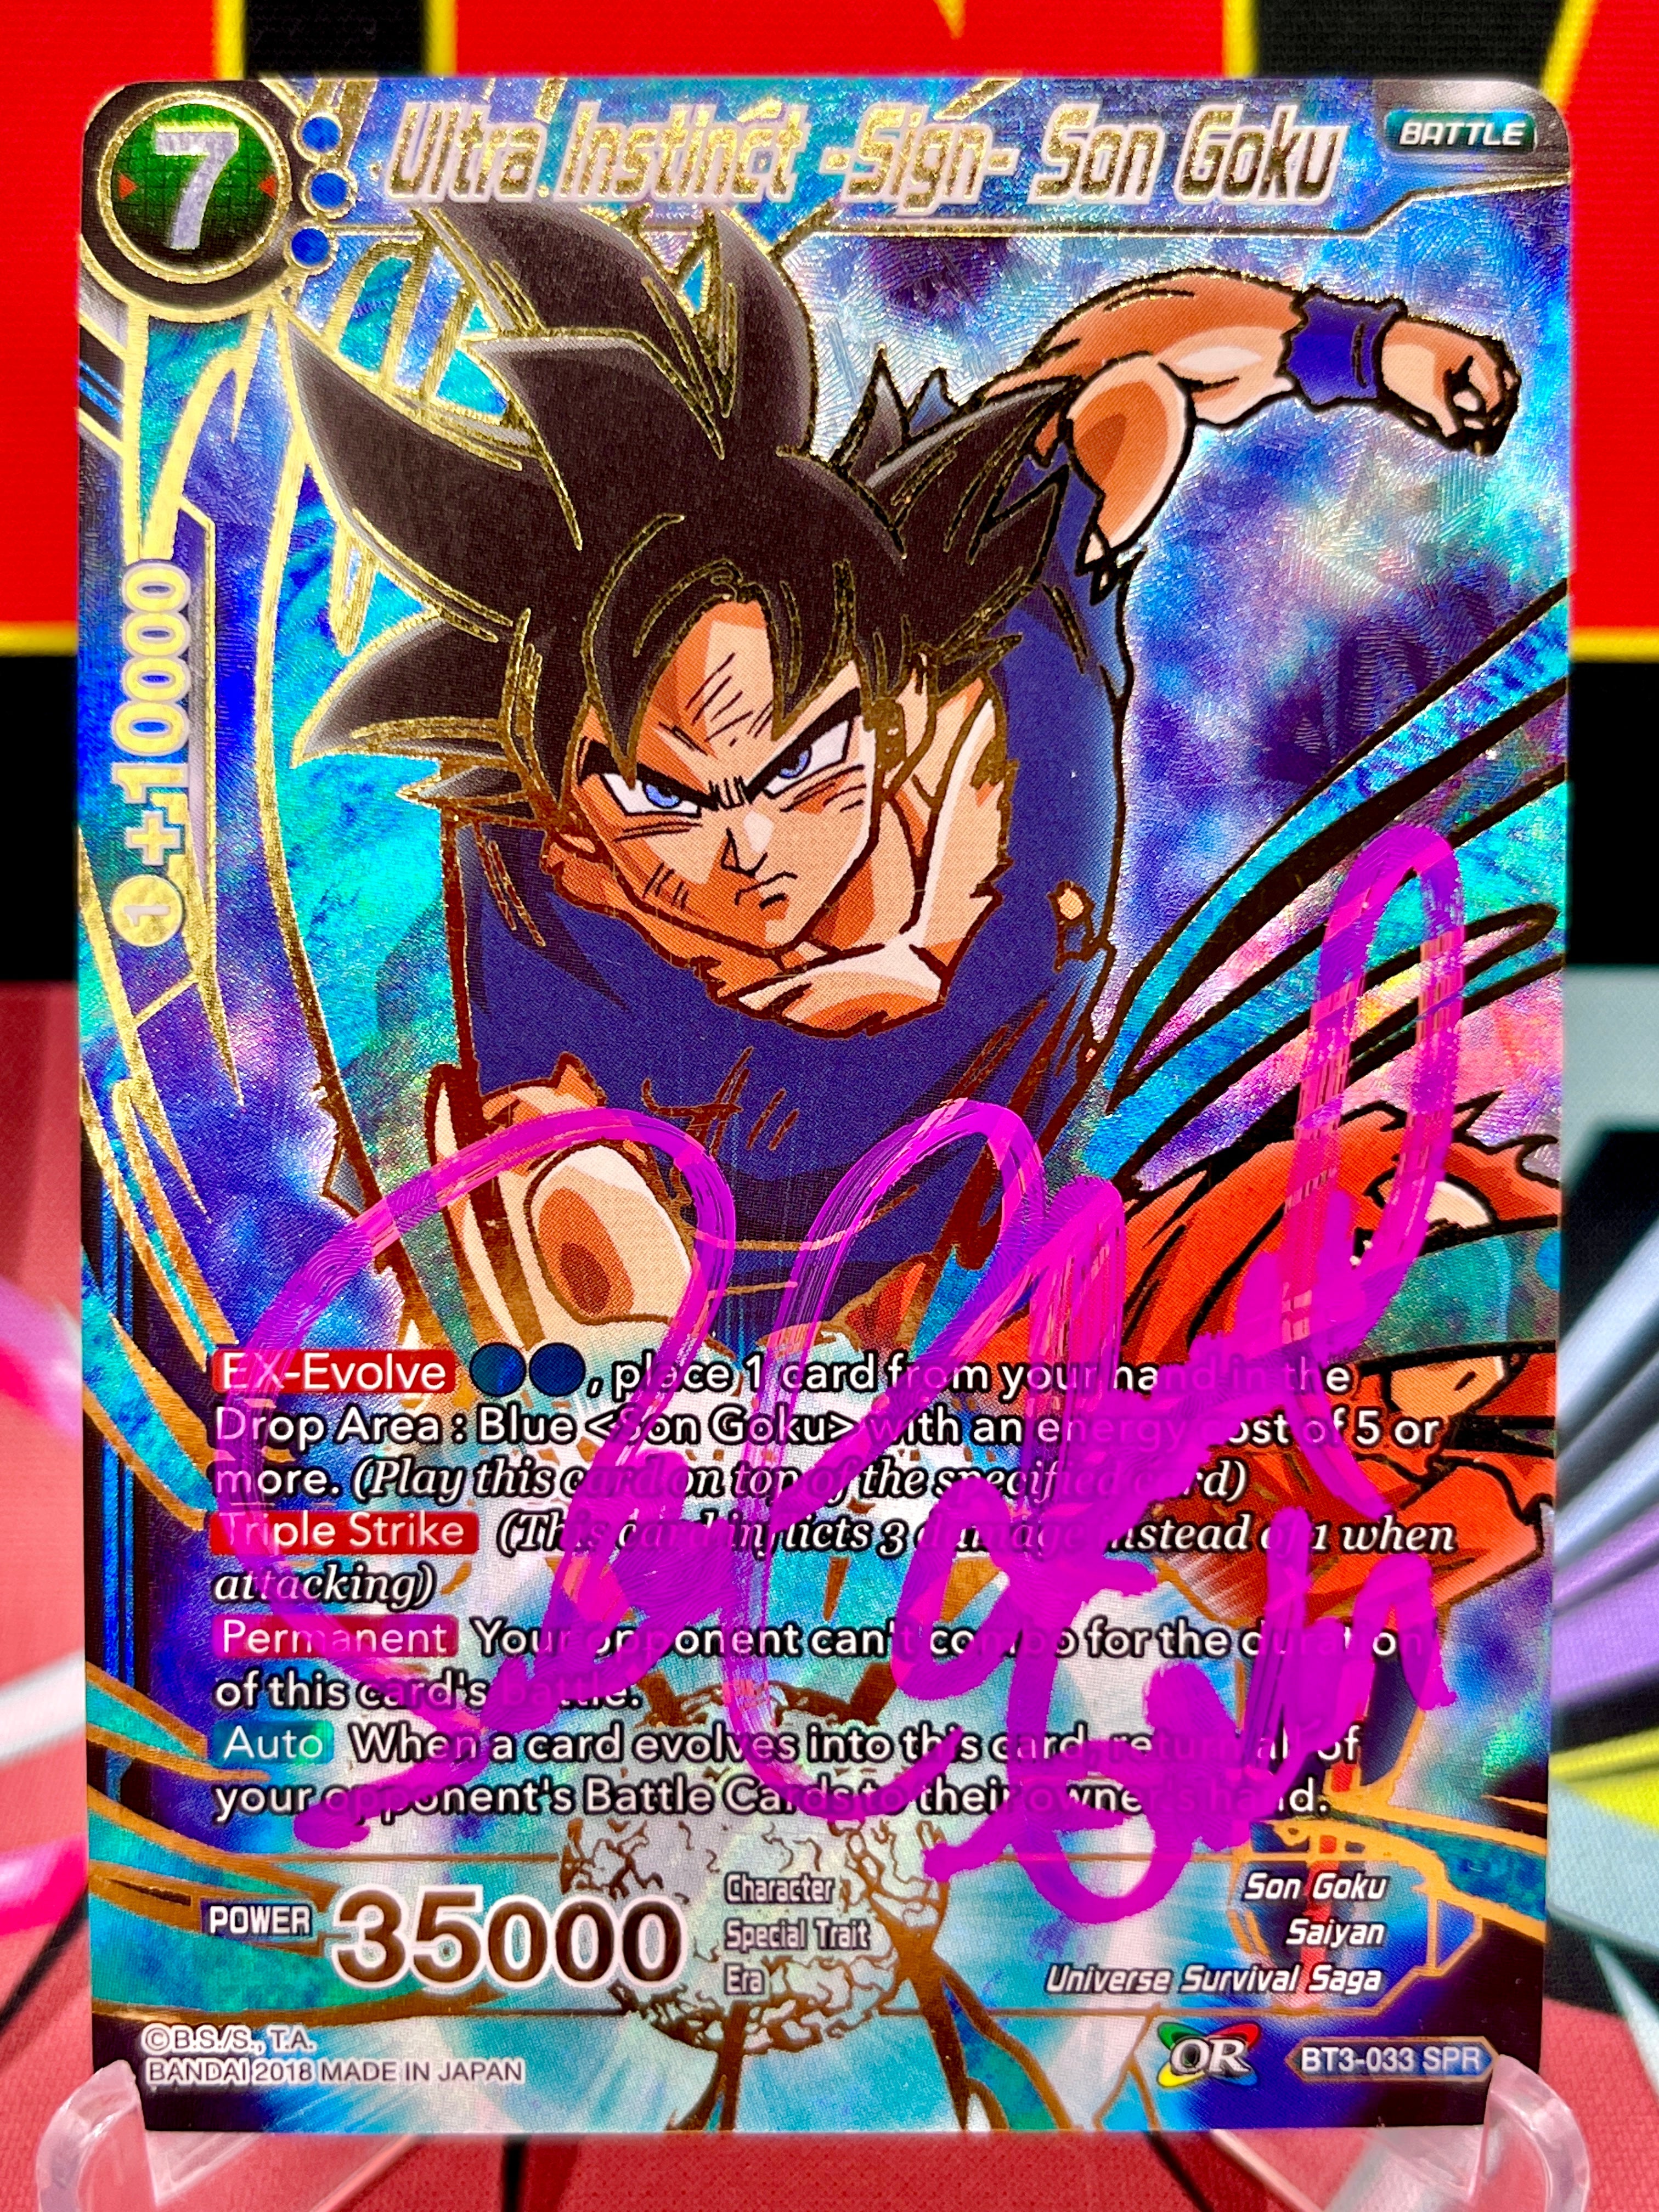 BT3-033 Ultra Instinct -Sign- Son Goku SPR (2018) Autographed by Sean Schemmel